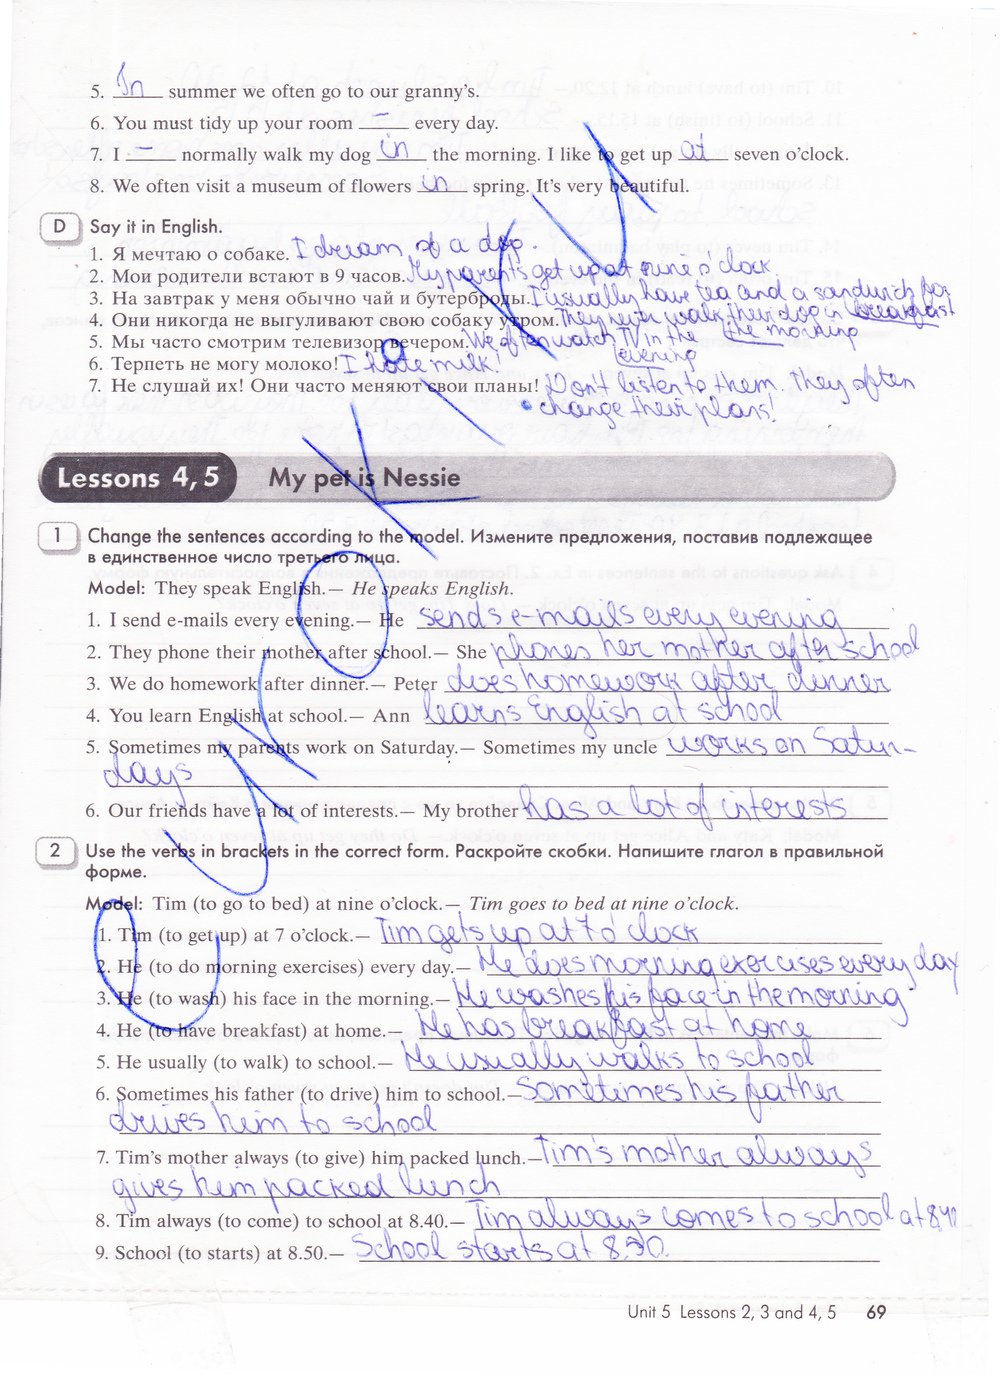 гдз 5 класс рабочая тетрадь часть 1 страница 69 английский язык Кауфман